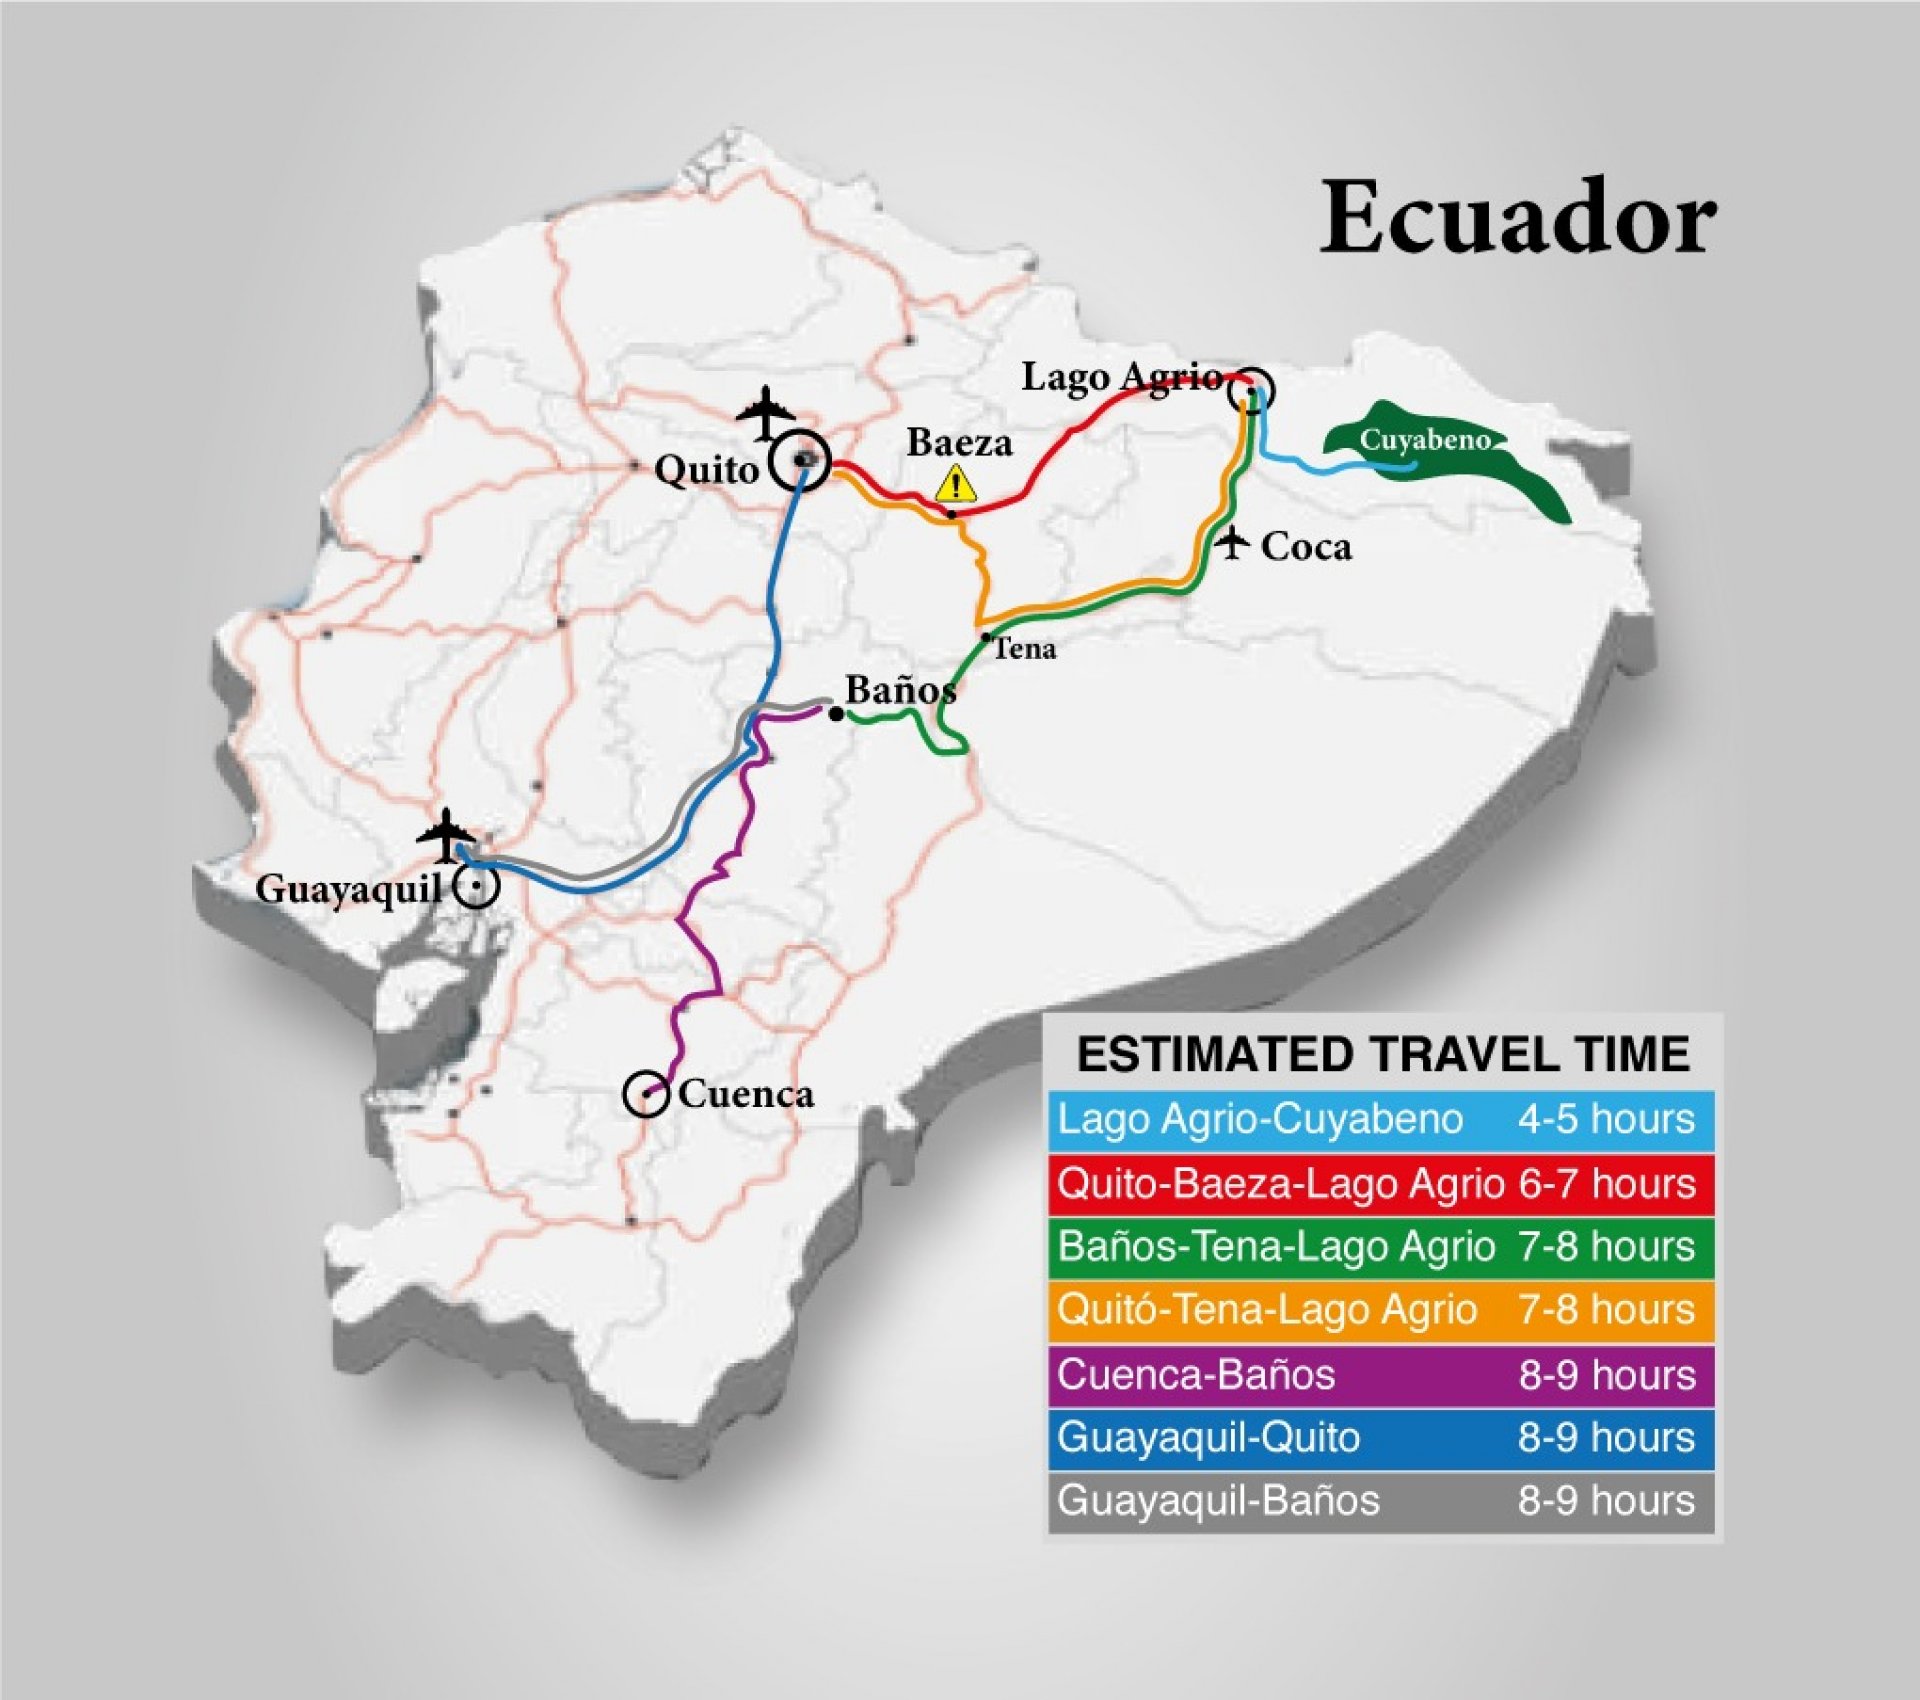 �Viajar en Auto al Cuyabeno (Lago Agrio) desde Guayaquil?